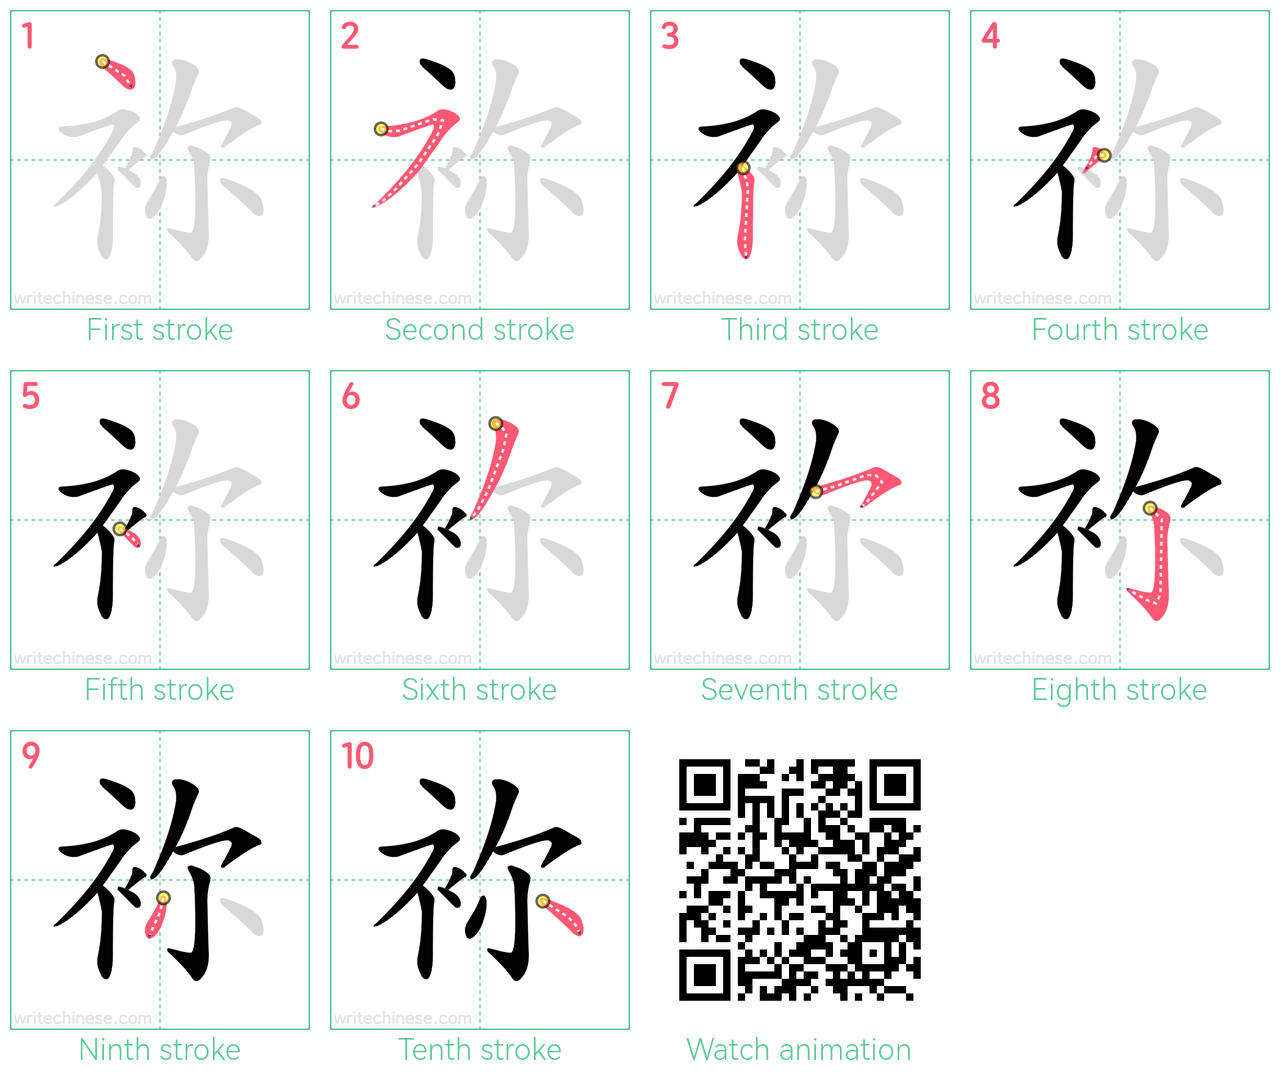 袮 step-by-step stroke order diagrams